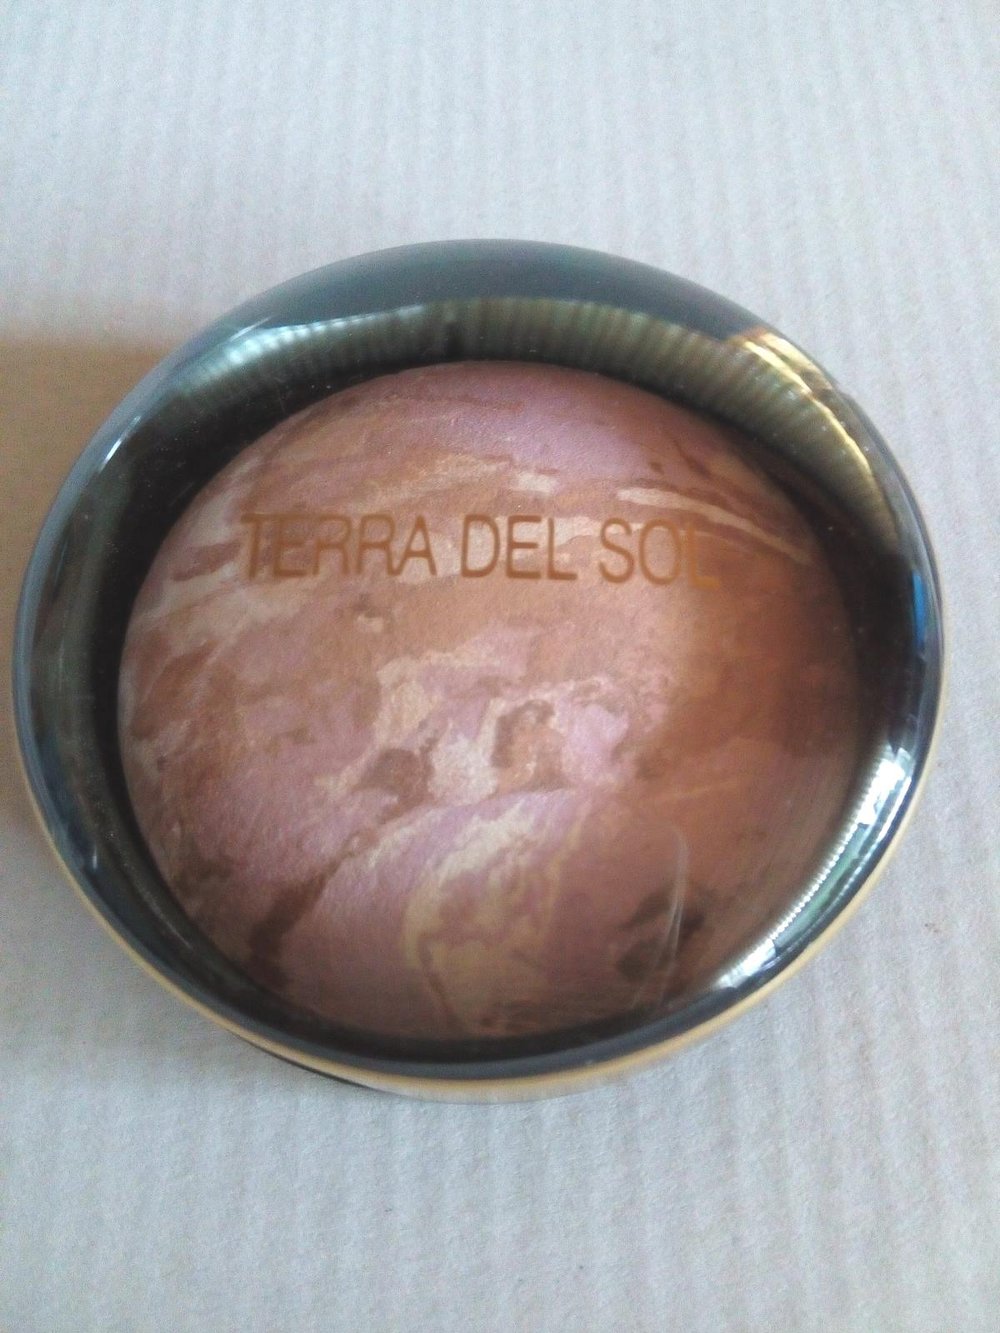 Belissima Douglas Accessoires - Belissima/Douglas Accessoires Make-up TERRA DEL SOL Broncer „04 Reparateur“ | :: Kleiderkorb.de